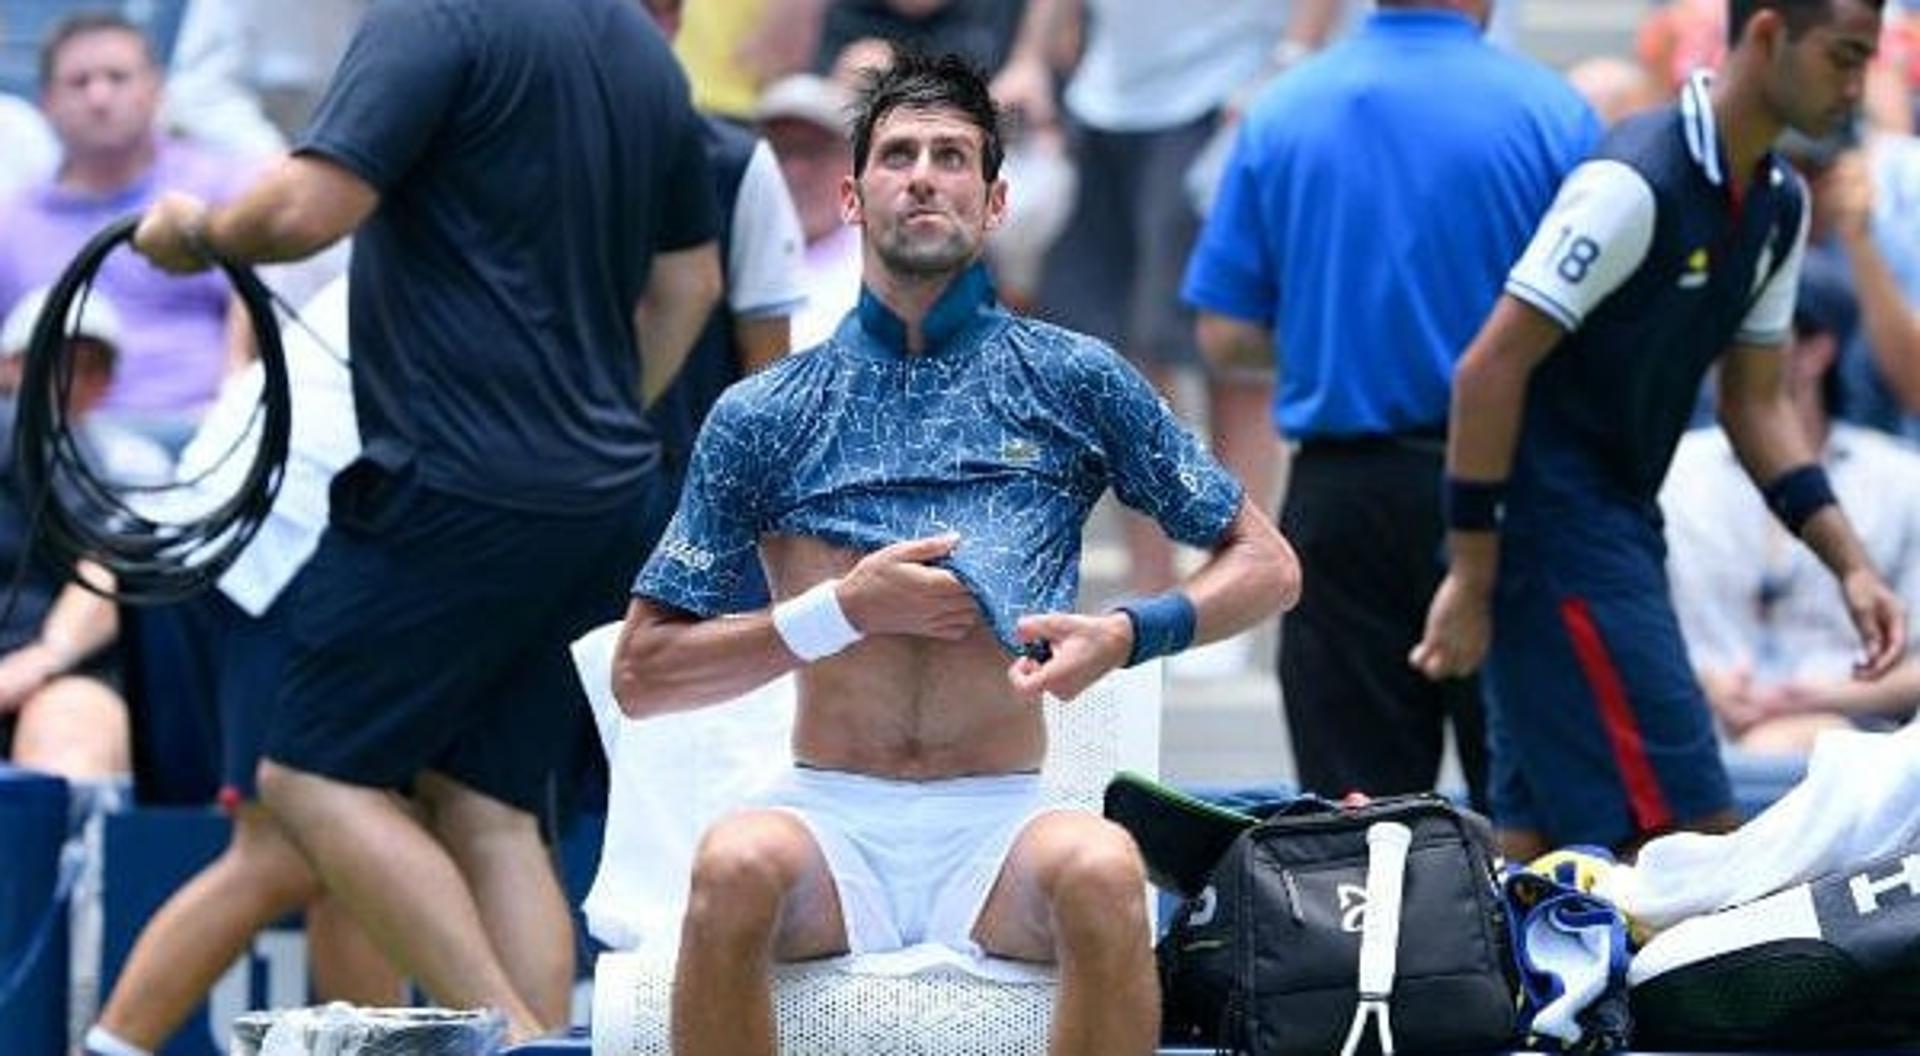 Novak Djokovic sofrendo com o calor